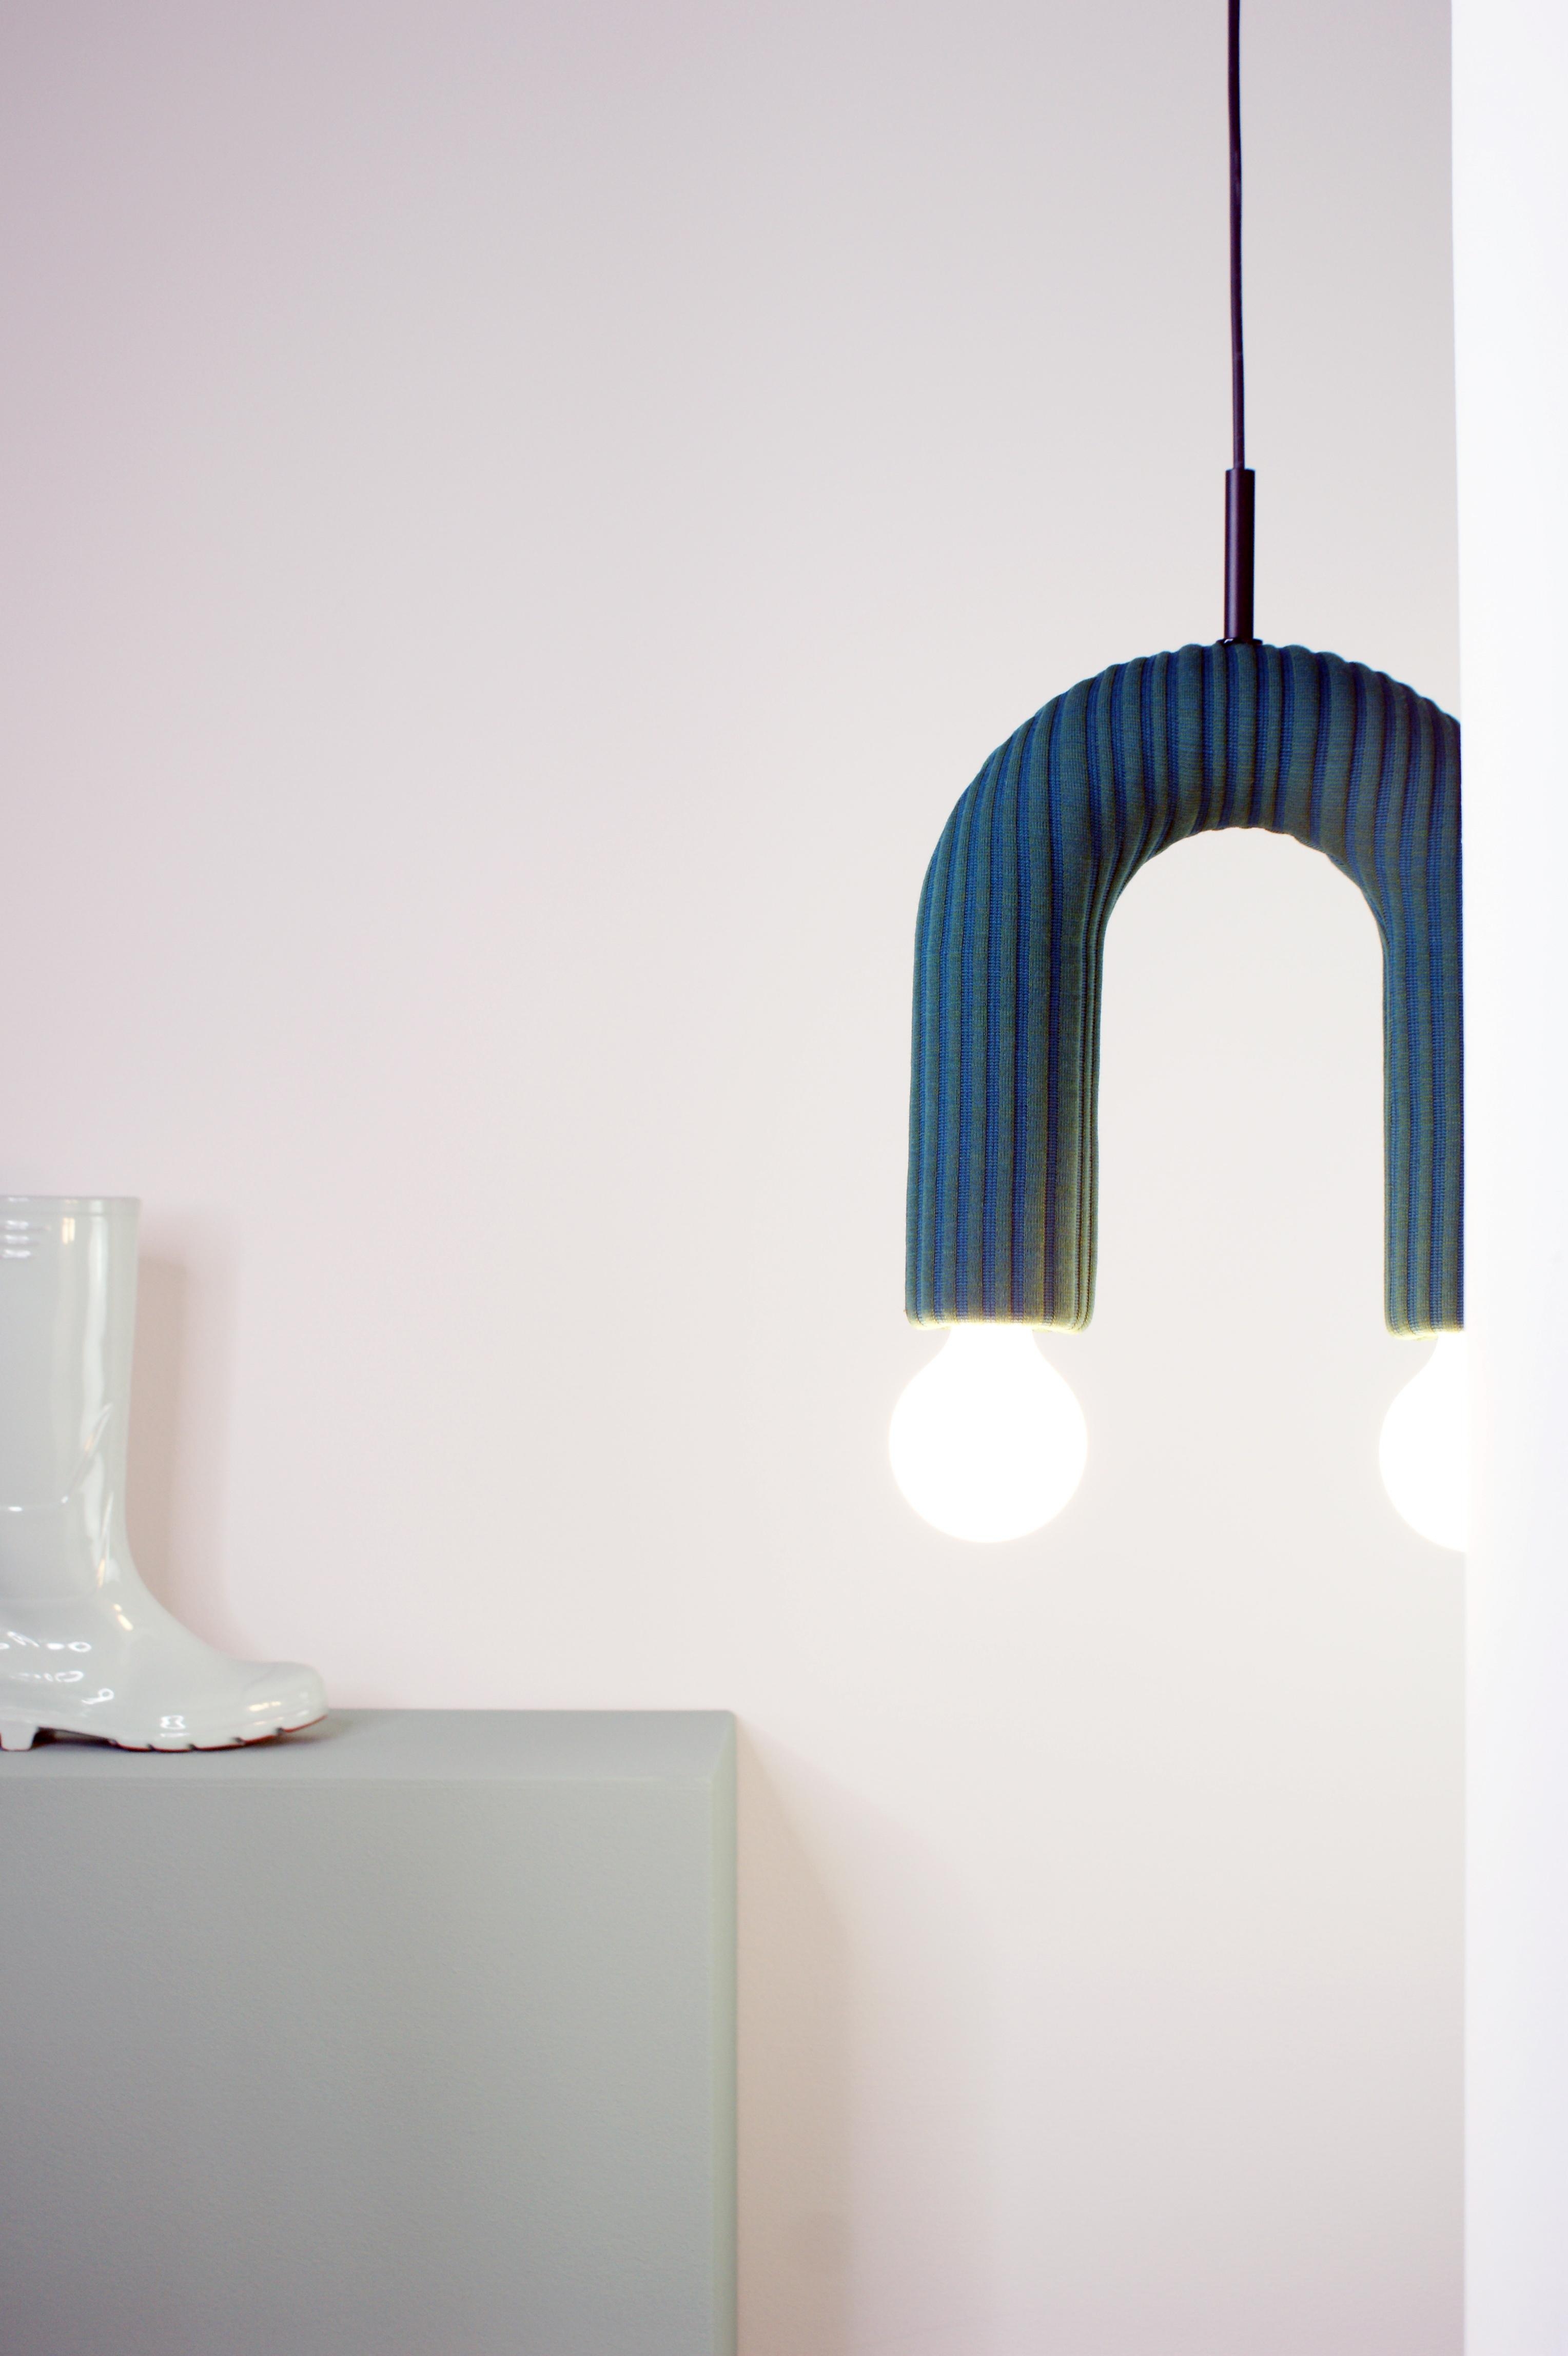 #minimal #design #stoff #neodesignstudios #rodrigovairinhos #lampe #beleuchtung #schlicht #stayathome #bleibdaheim